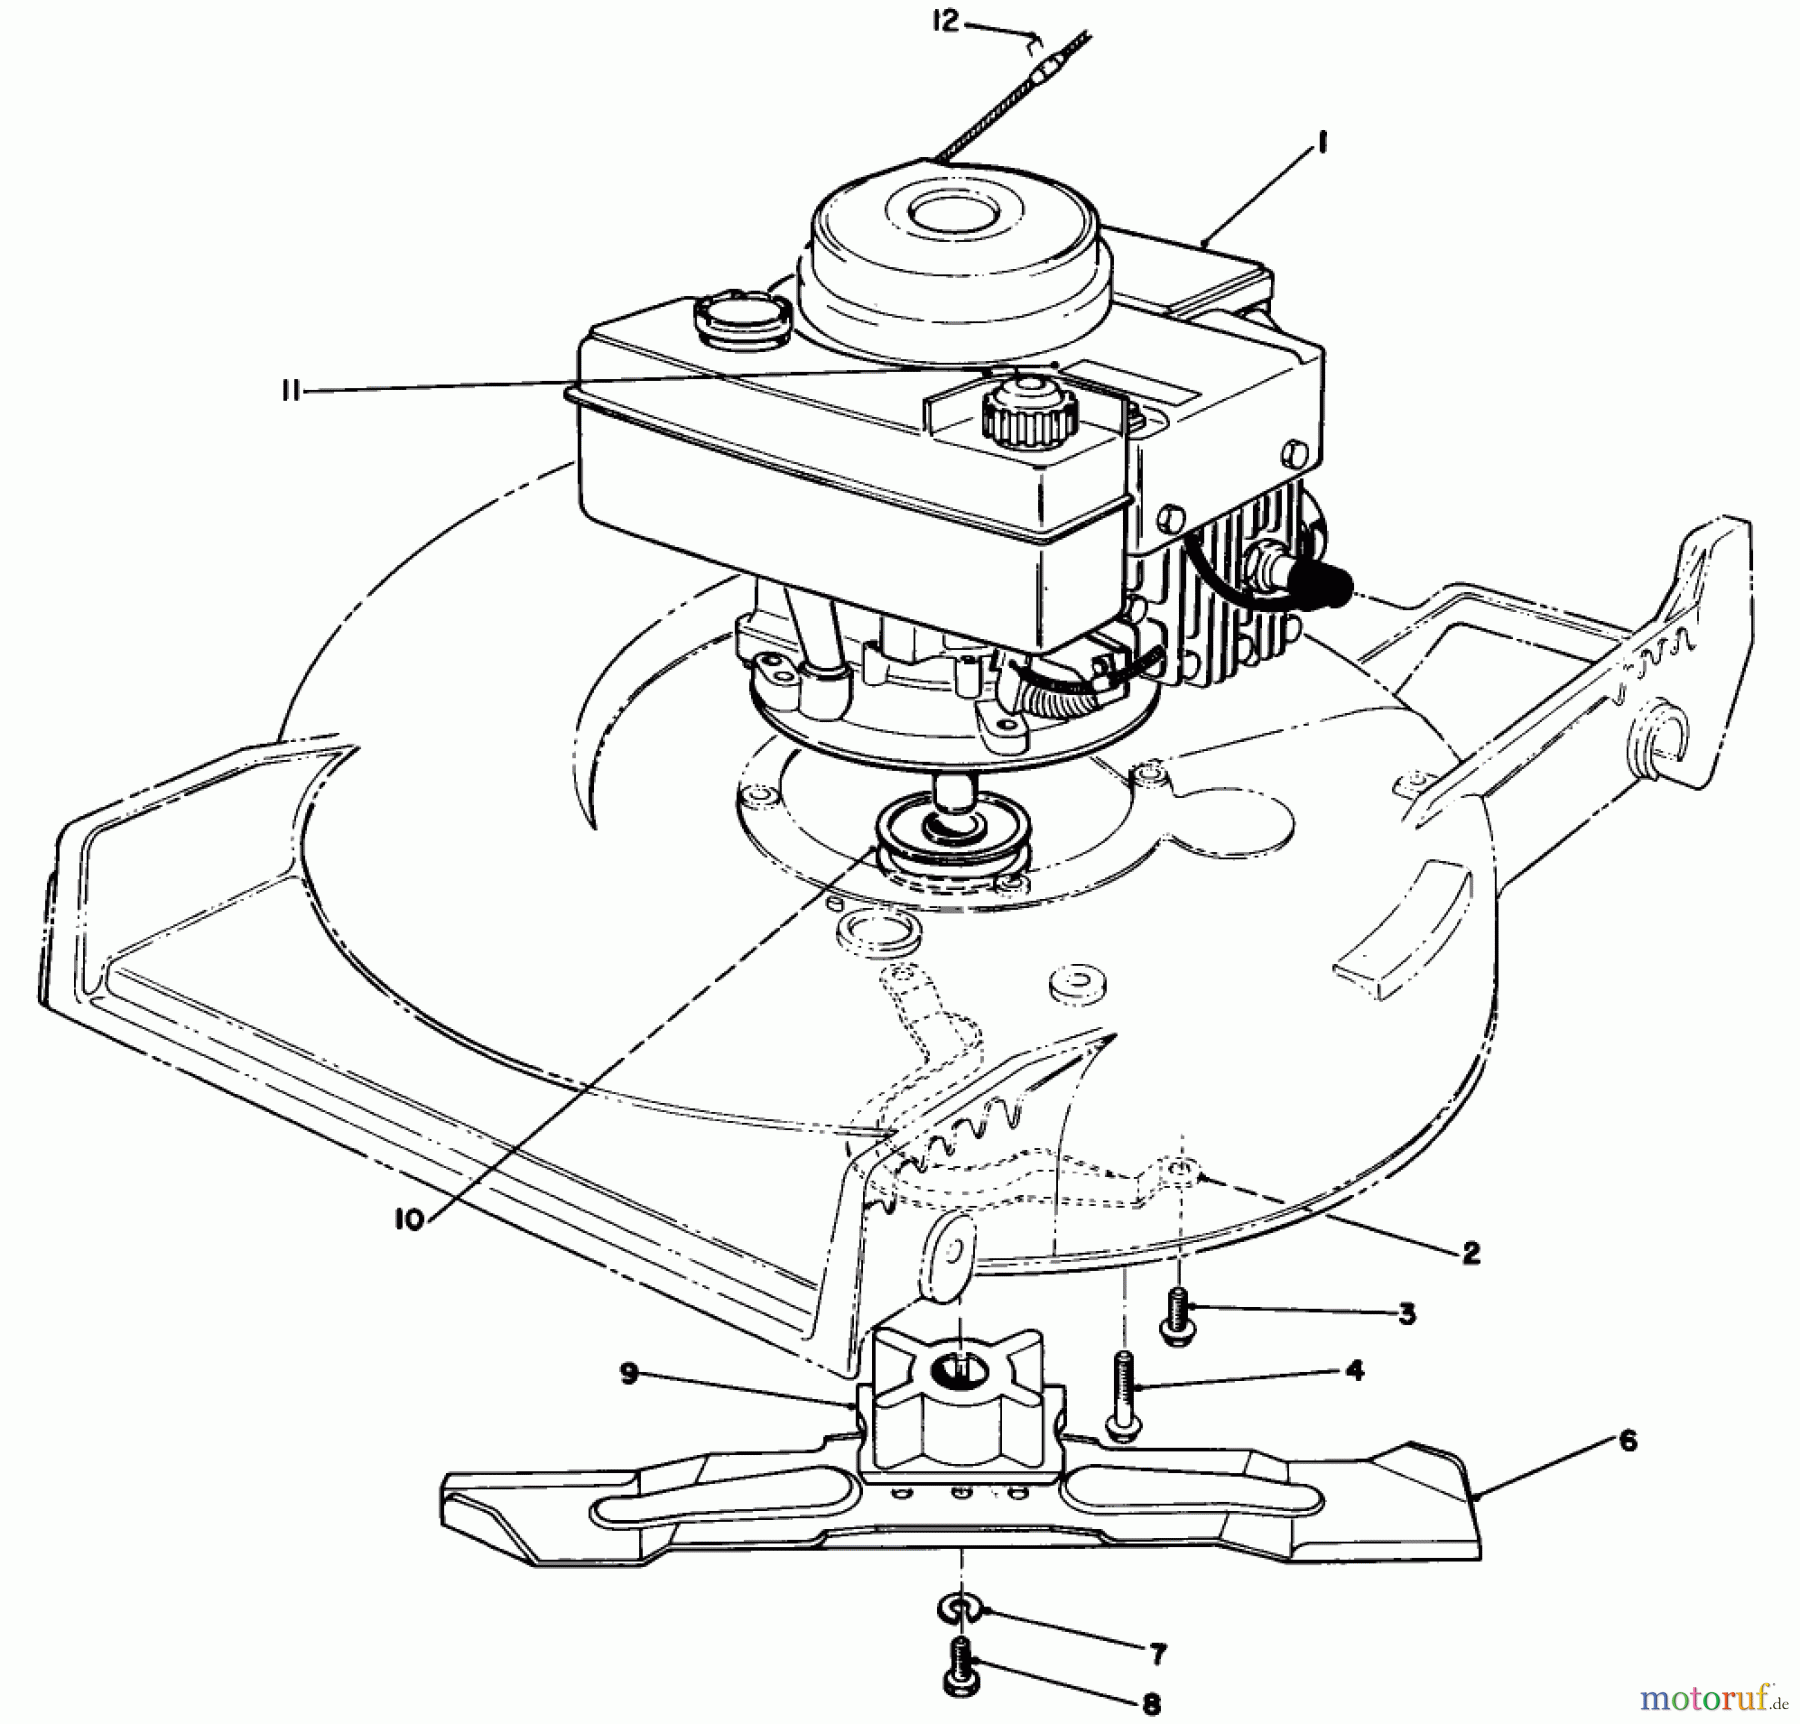  Toro Neu Mowers, Walk-Behind Seite 1 20631 - Toro Lawnmower, 1989 (9000001-9999999) ENGINE ASSEMBLY